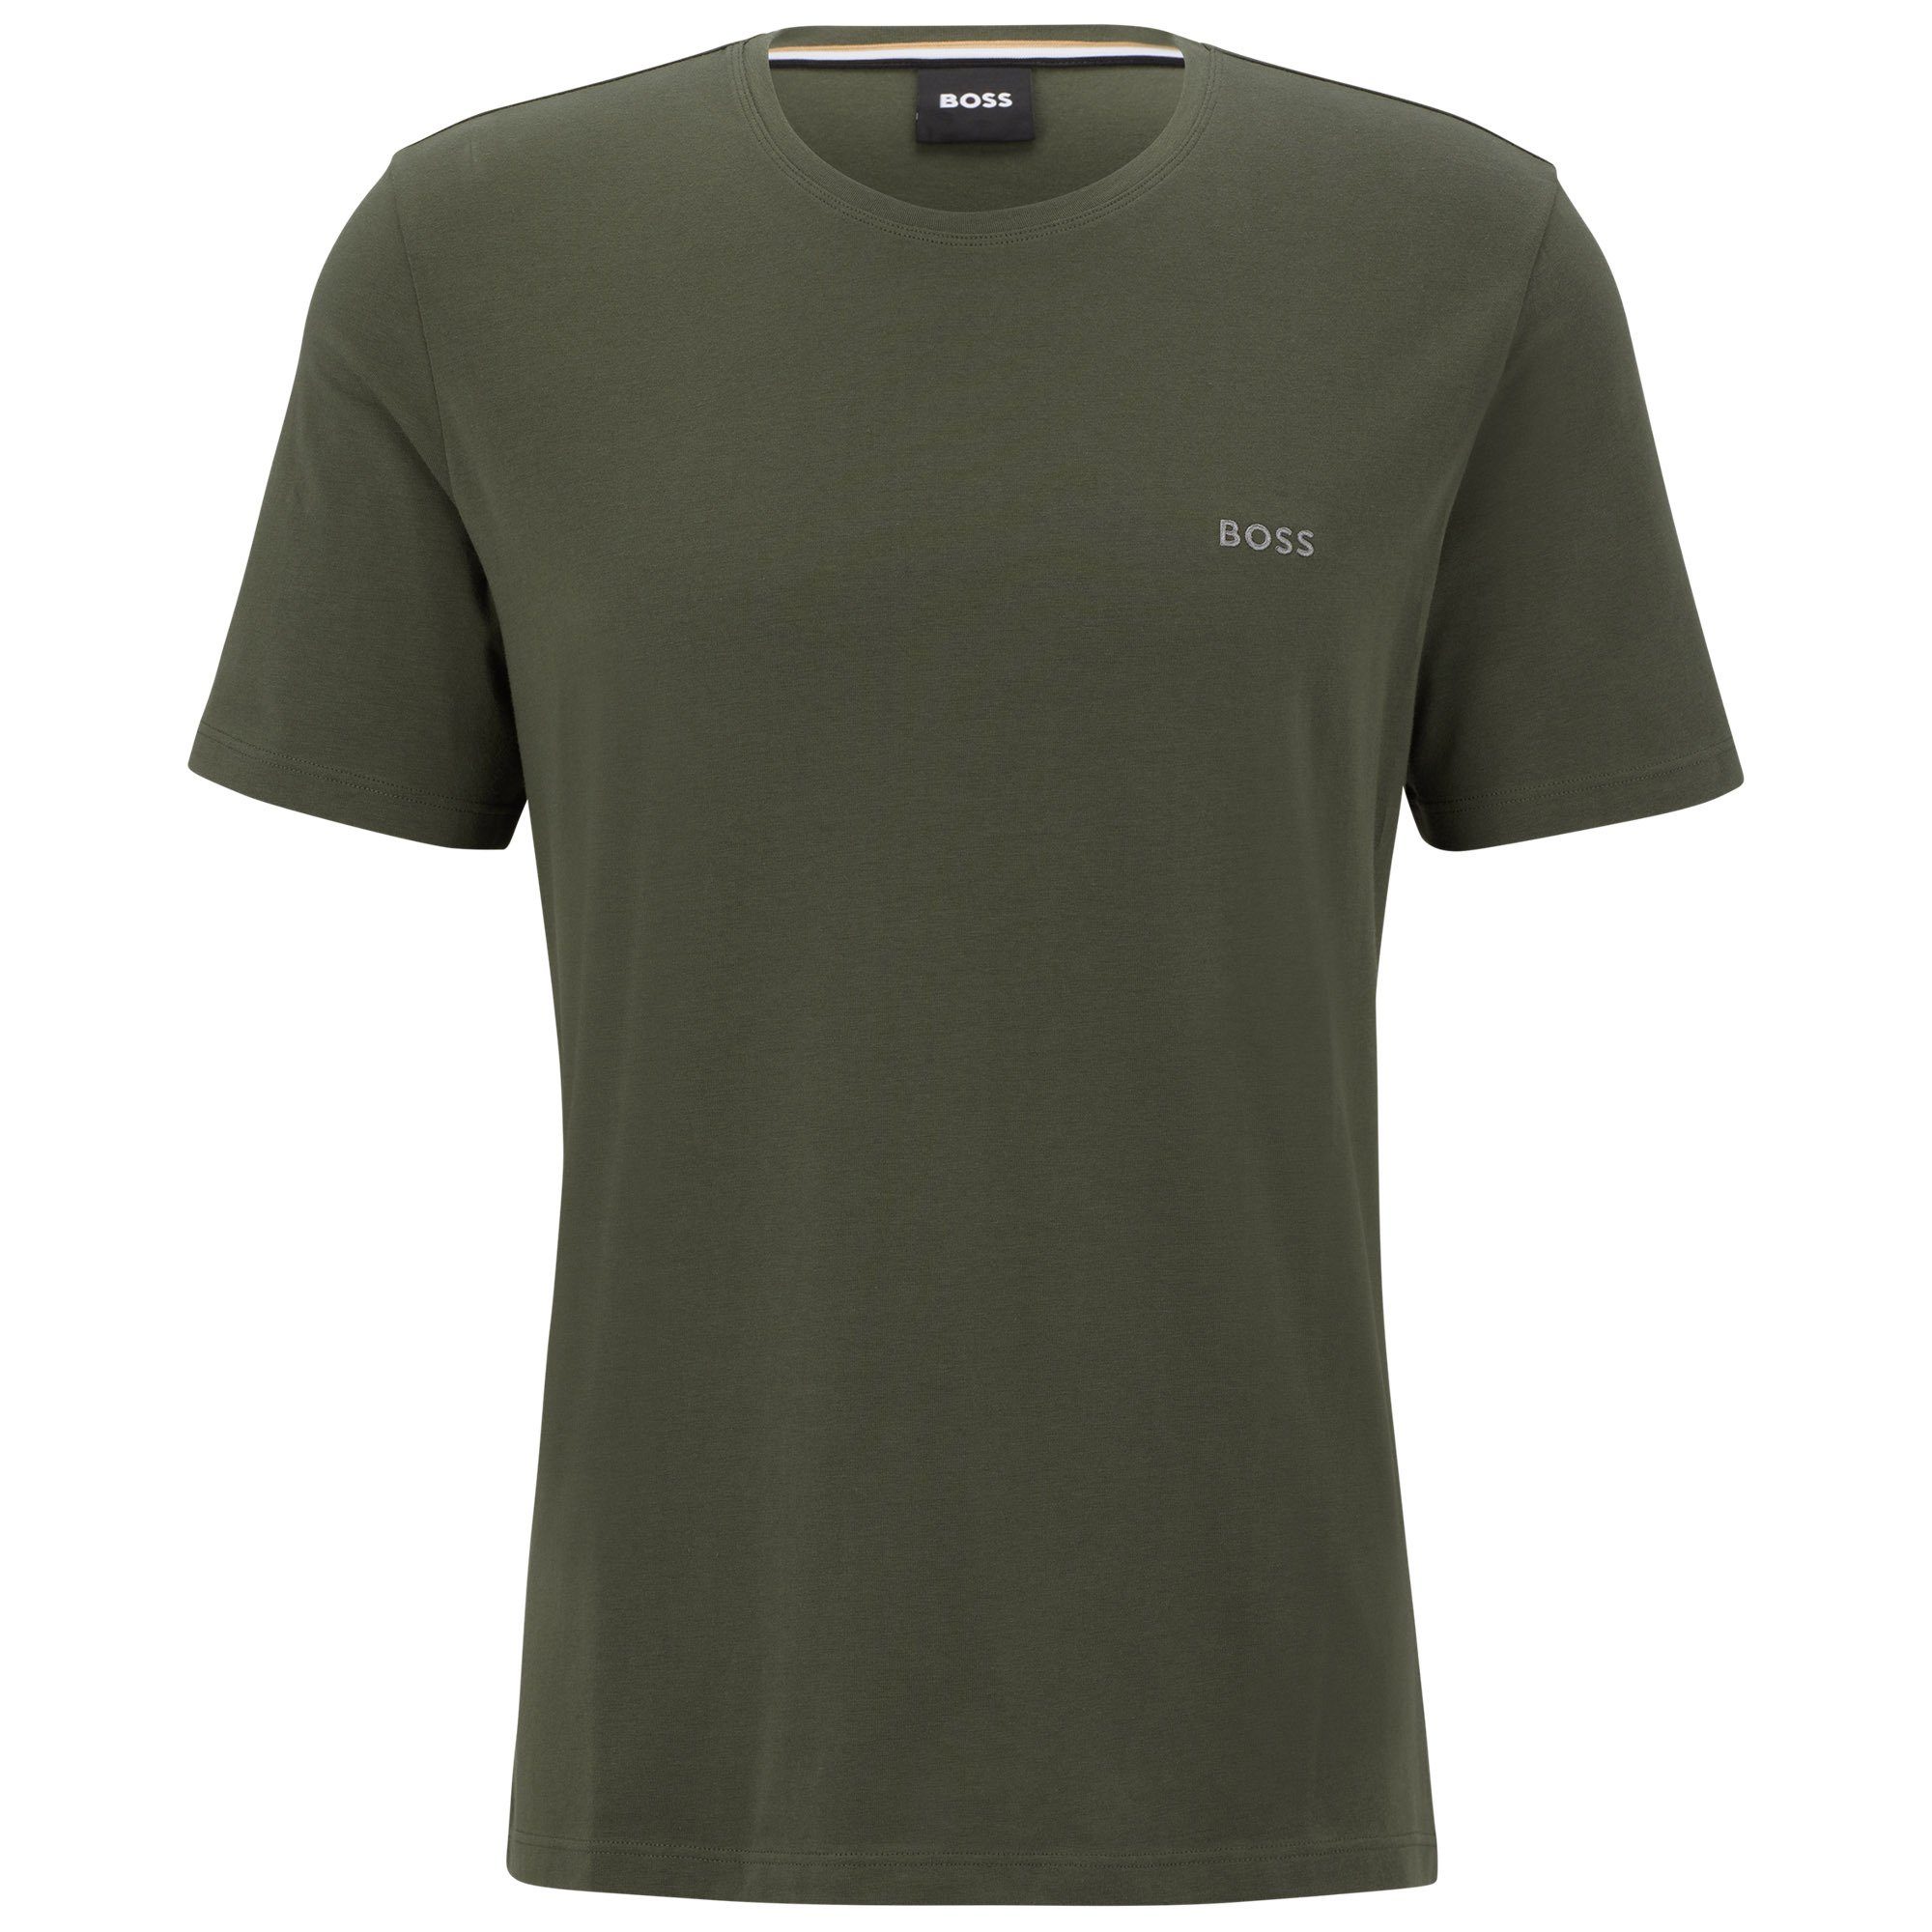 BOSS T-Shirt Herren T-Shirt - Mix & Match, Rundhals, Baumwolle Grün (Dark Green)